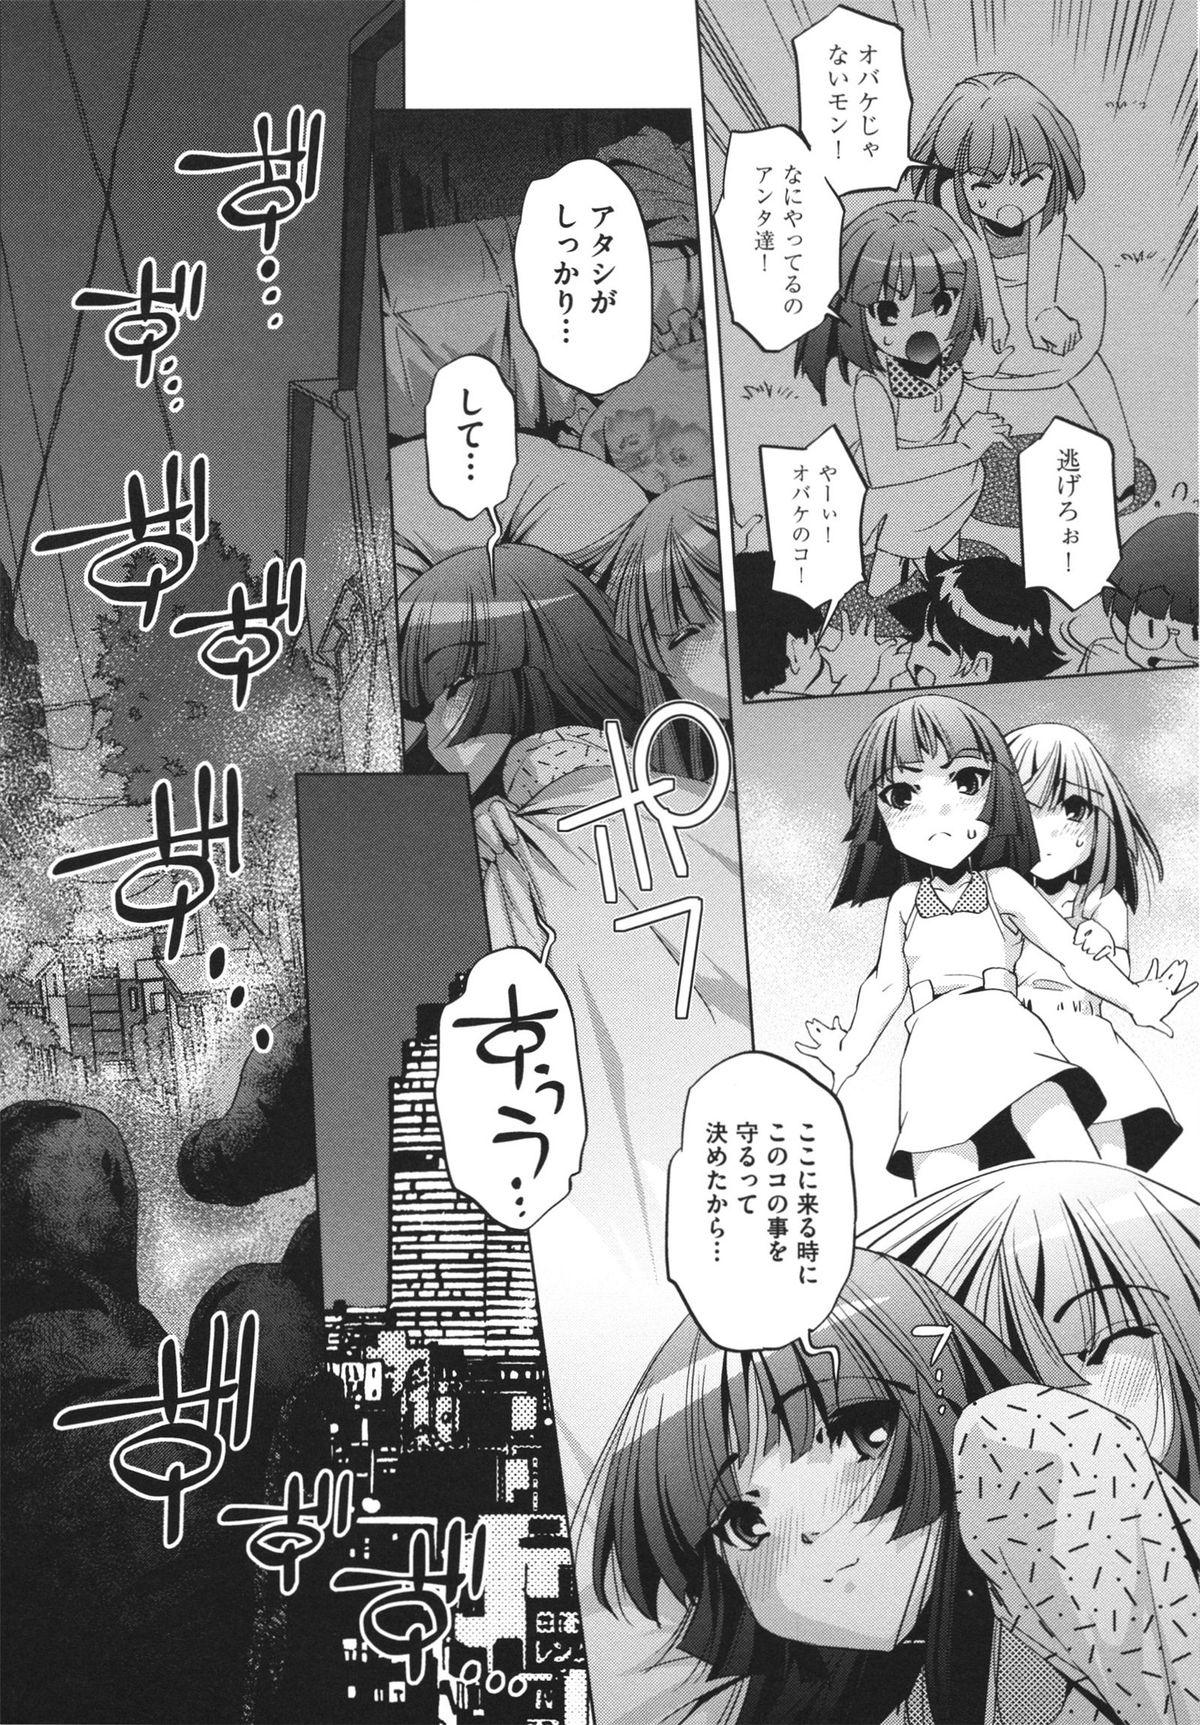 [Ootori Ryuuji] Shokushu wa Yawarakana Chibusa ni Makitsuki Onna-tachi no Ana wo Kakimidasu - Feeler coils around a soft breast and violates women's hole. 60